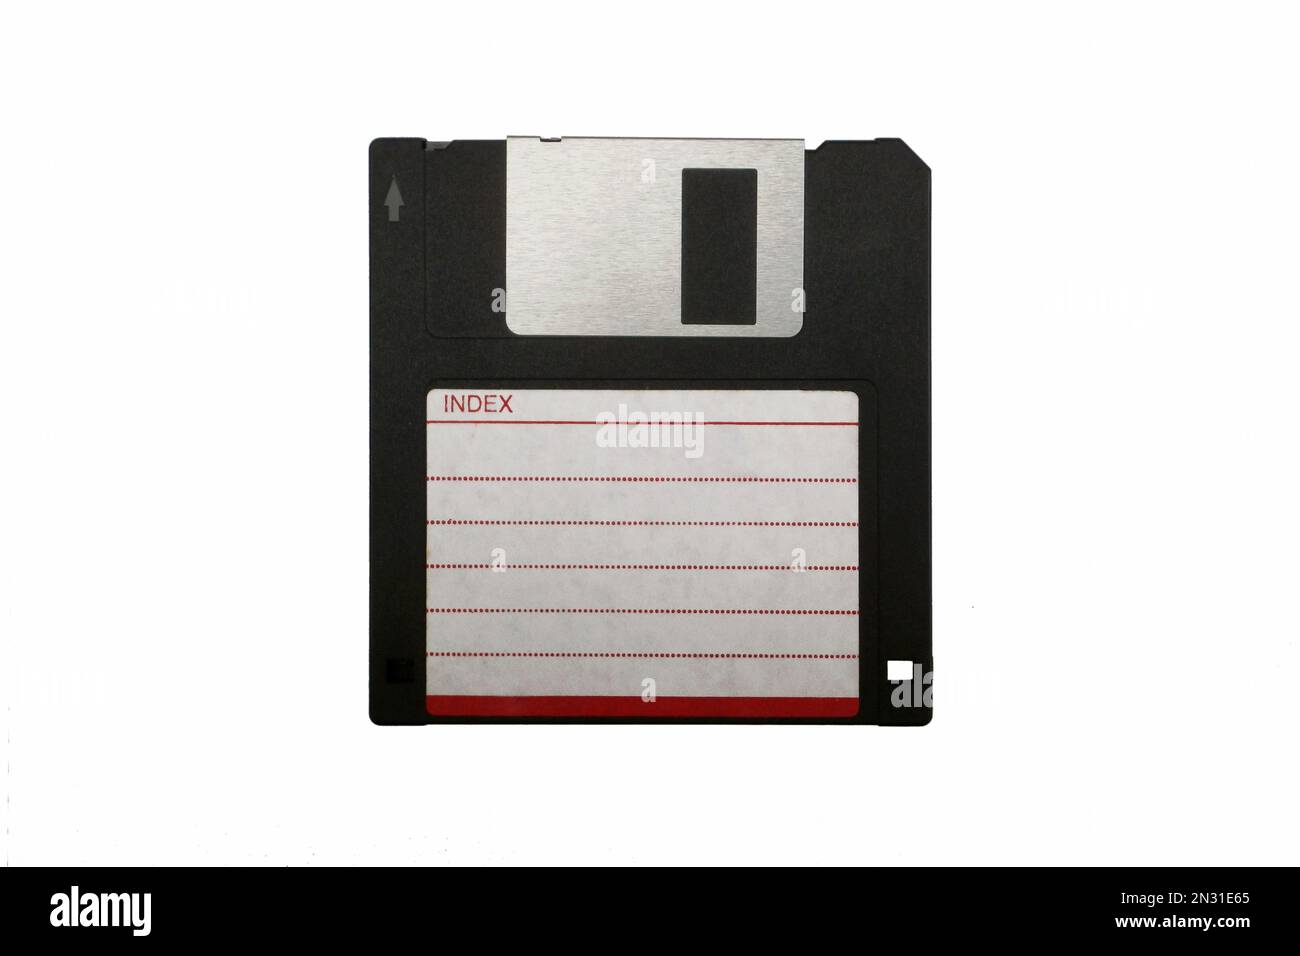 Foto de estudio de un disquete de los años noventa aislado sobre un fondo blanco. Foto de stock